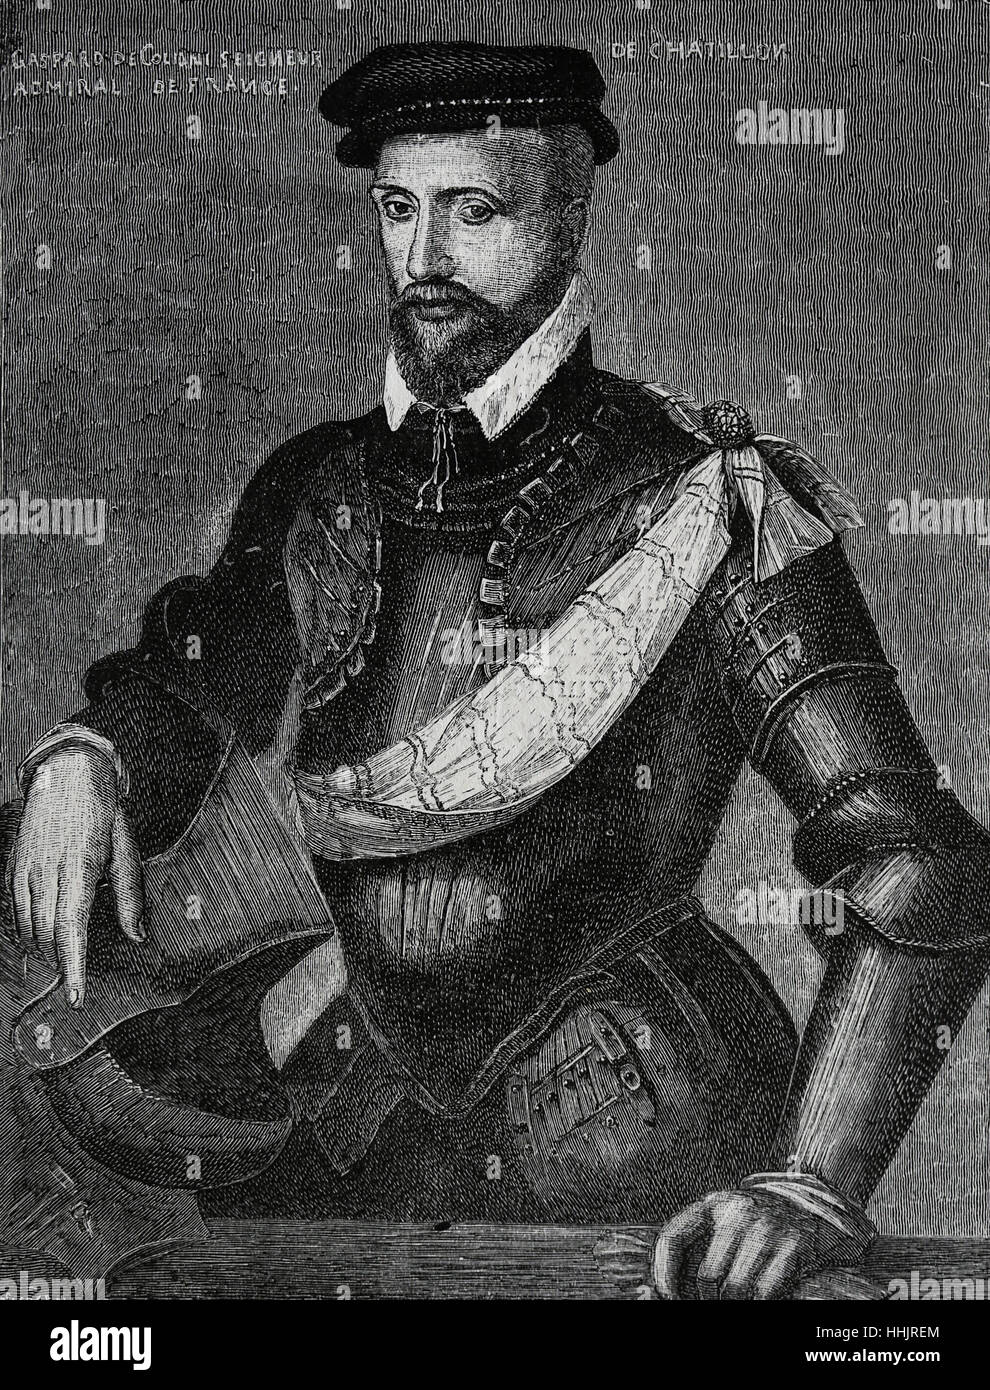 Gaspard II de Coligny (1519-1572). Nobile francese e admiral, Huguenot leader in Francia le guerre di religione. Incisione, 1884. Ritratto. Foto Stock